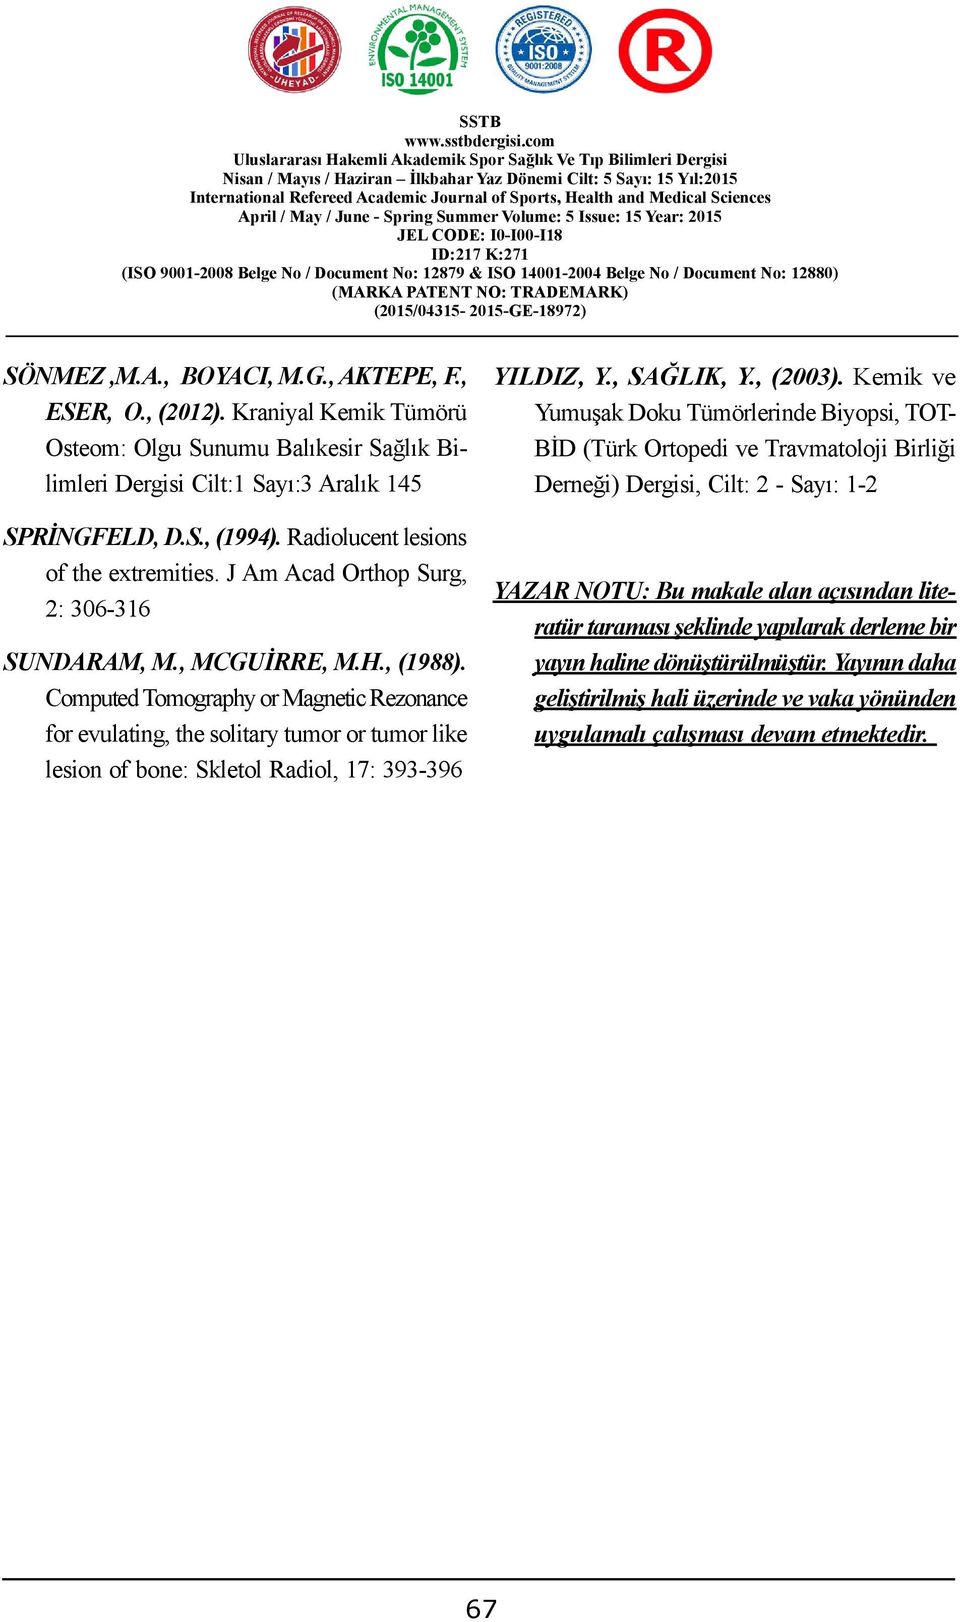 G., AKTEPE, F., ESER, O., (2012). Kraniyal Kemik Tümörü Osteom: Olgu Sunumu Balıkesir Sağlık Bilimleri Dergisi Cilt:1 Sayı:3 Aralık 145 SPRİNGFELD, D.S., (1994).